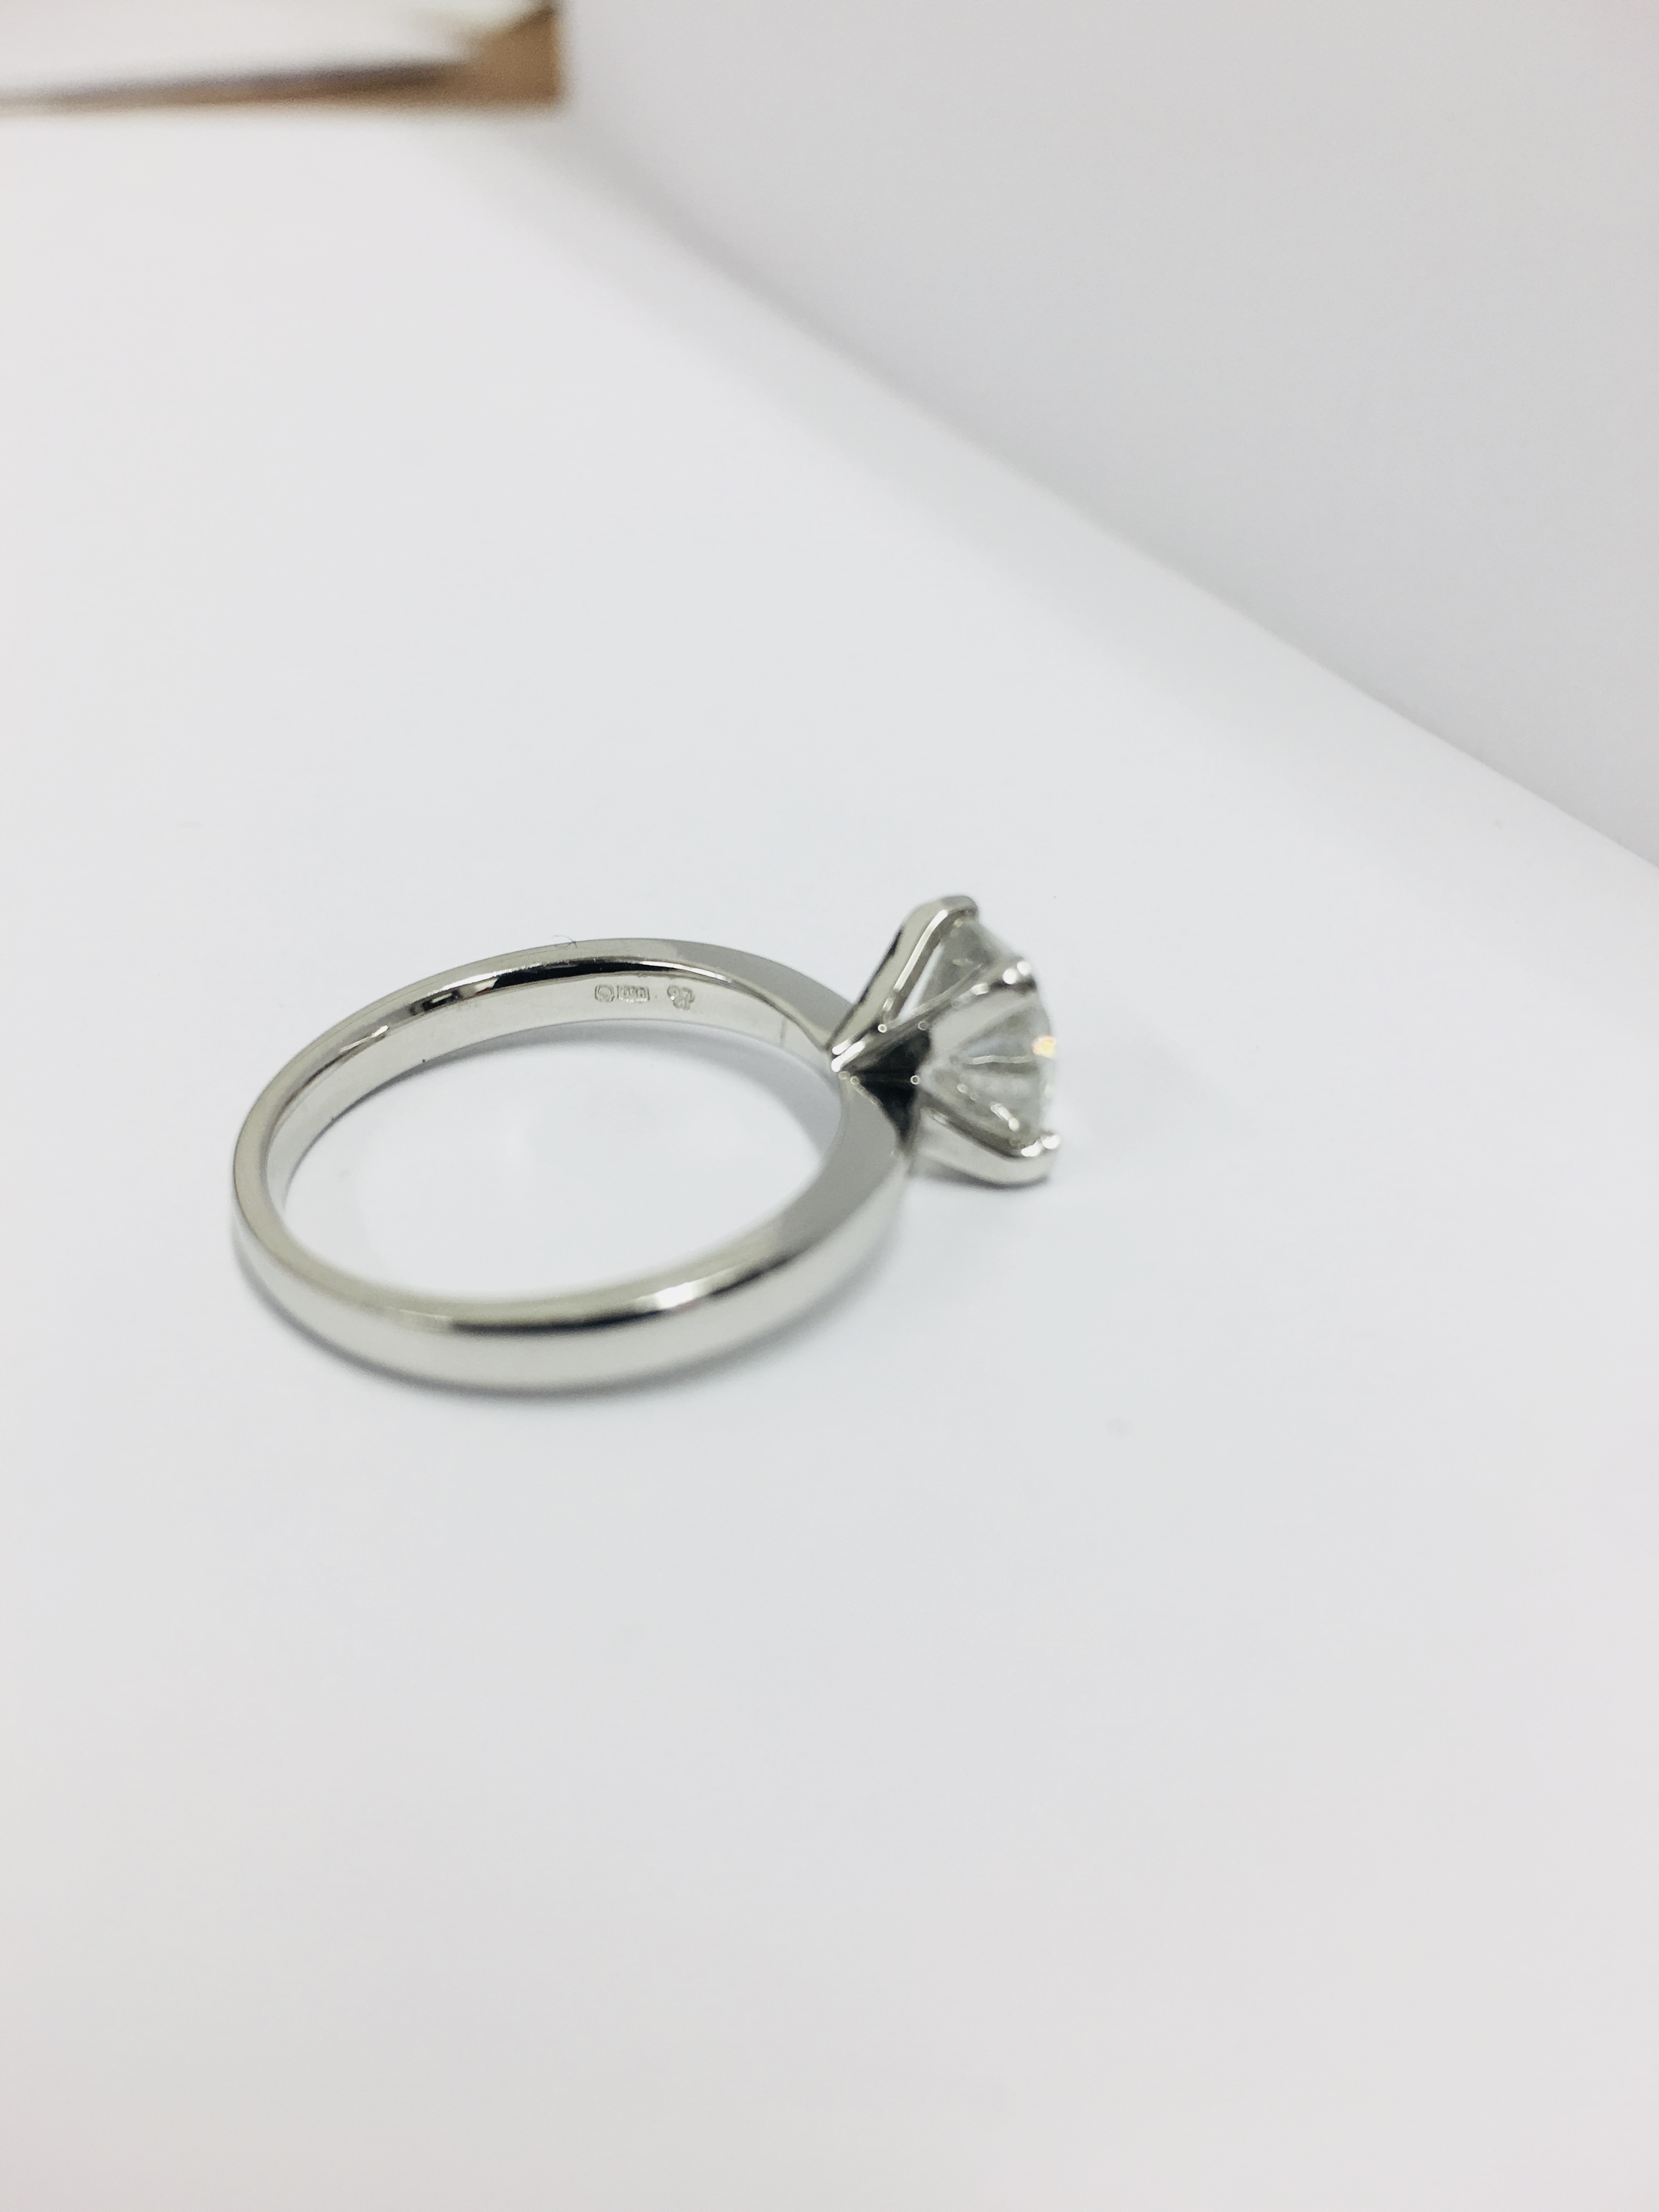 2.08ct diamond solitaire ring set in platinum - Image 6 of 6